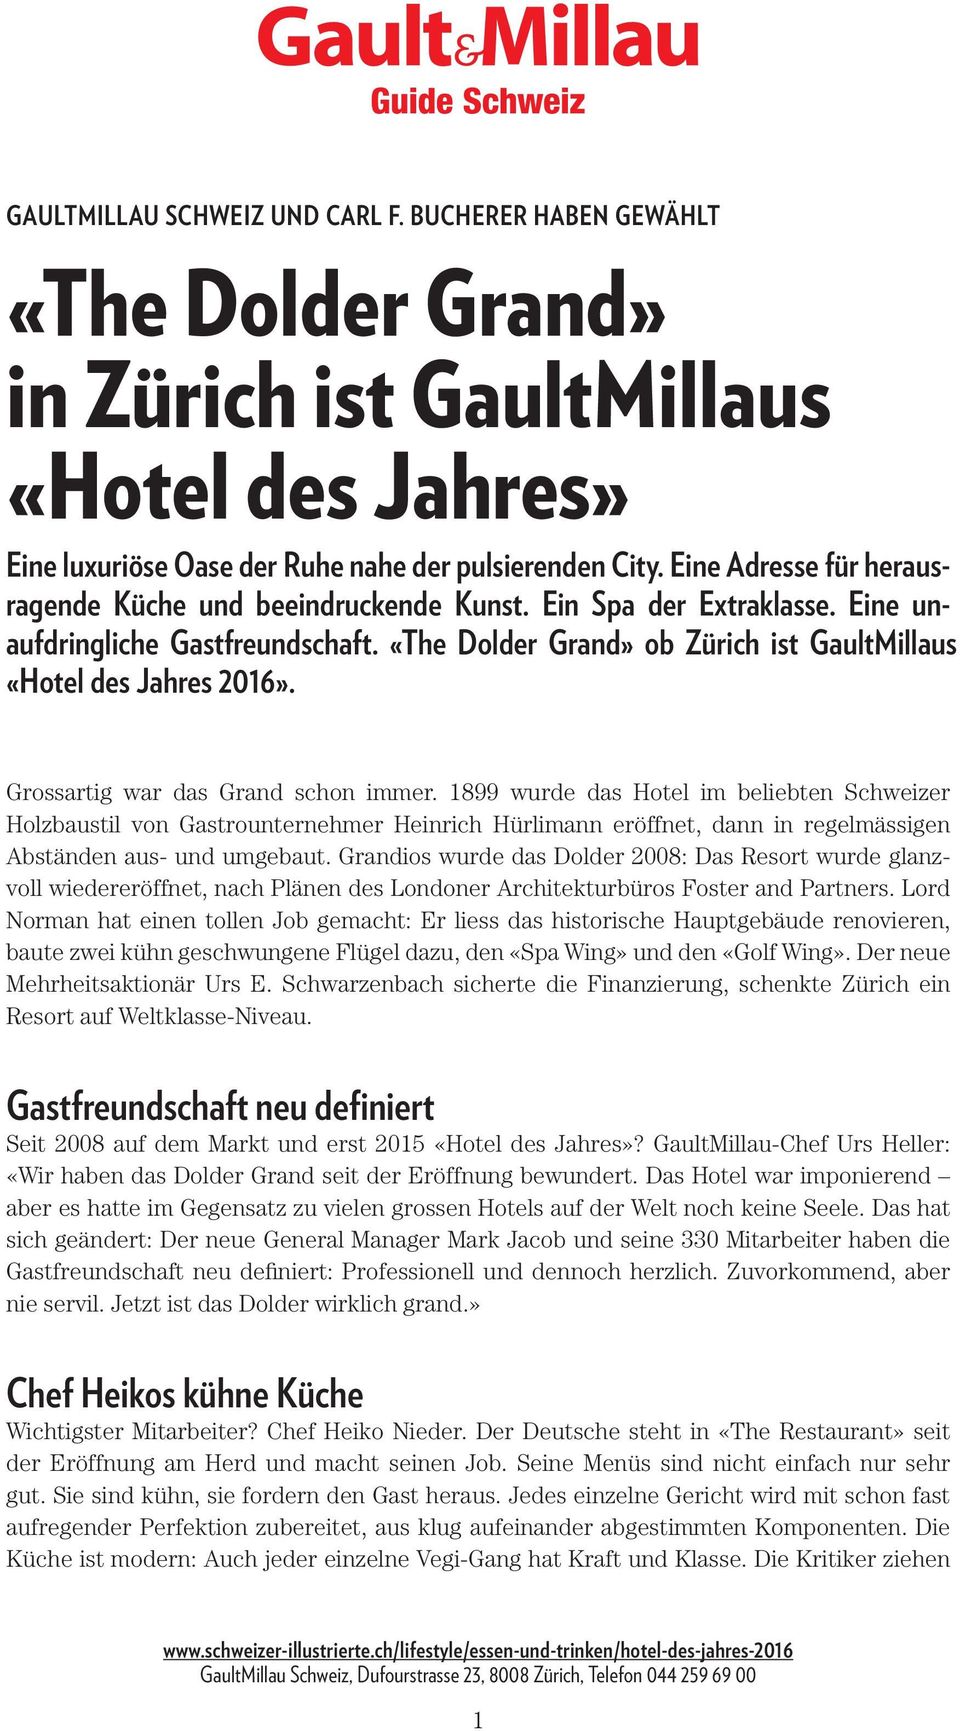 Grossartig war das Grand schon immer. 1899 wurde das Hotel im beliebten Schweizer Holzbaustil von Gastrounternehmer Heinrich Hürlimann eröffnet, dann in regelmässigen Abständen aus- und umgebaut.